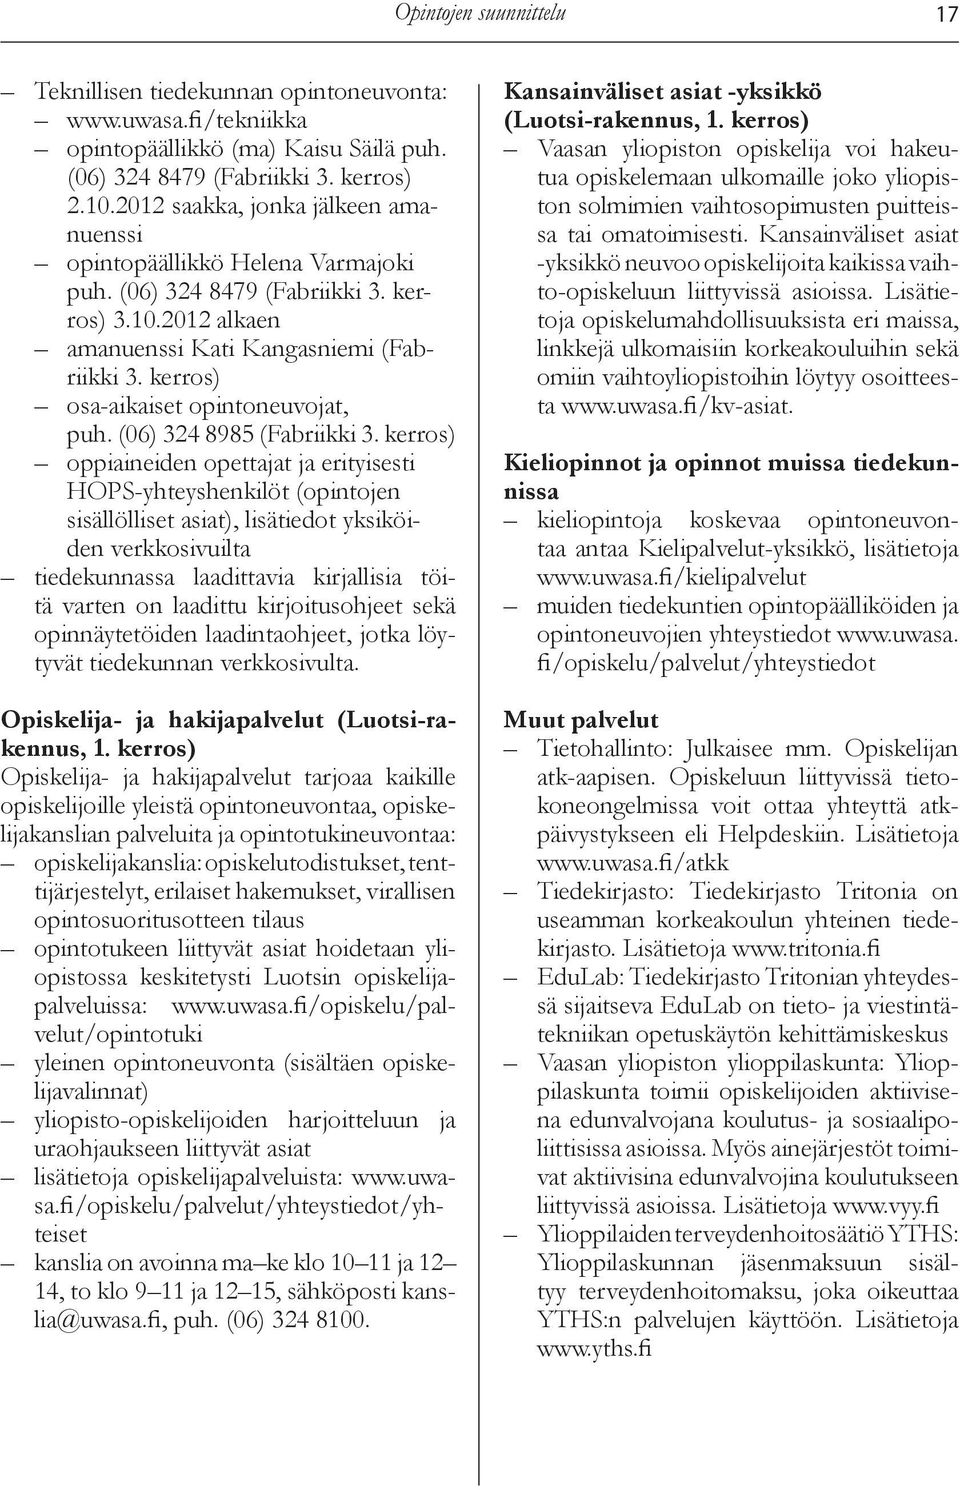 kerros) osa-aikaiset intoneuvojat, puh. (06) 324 8985 (Fabriikki 3.